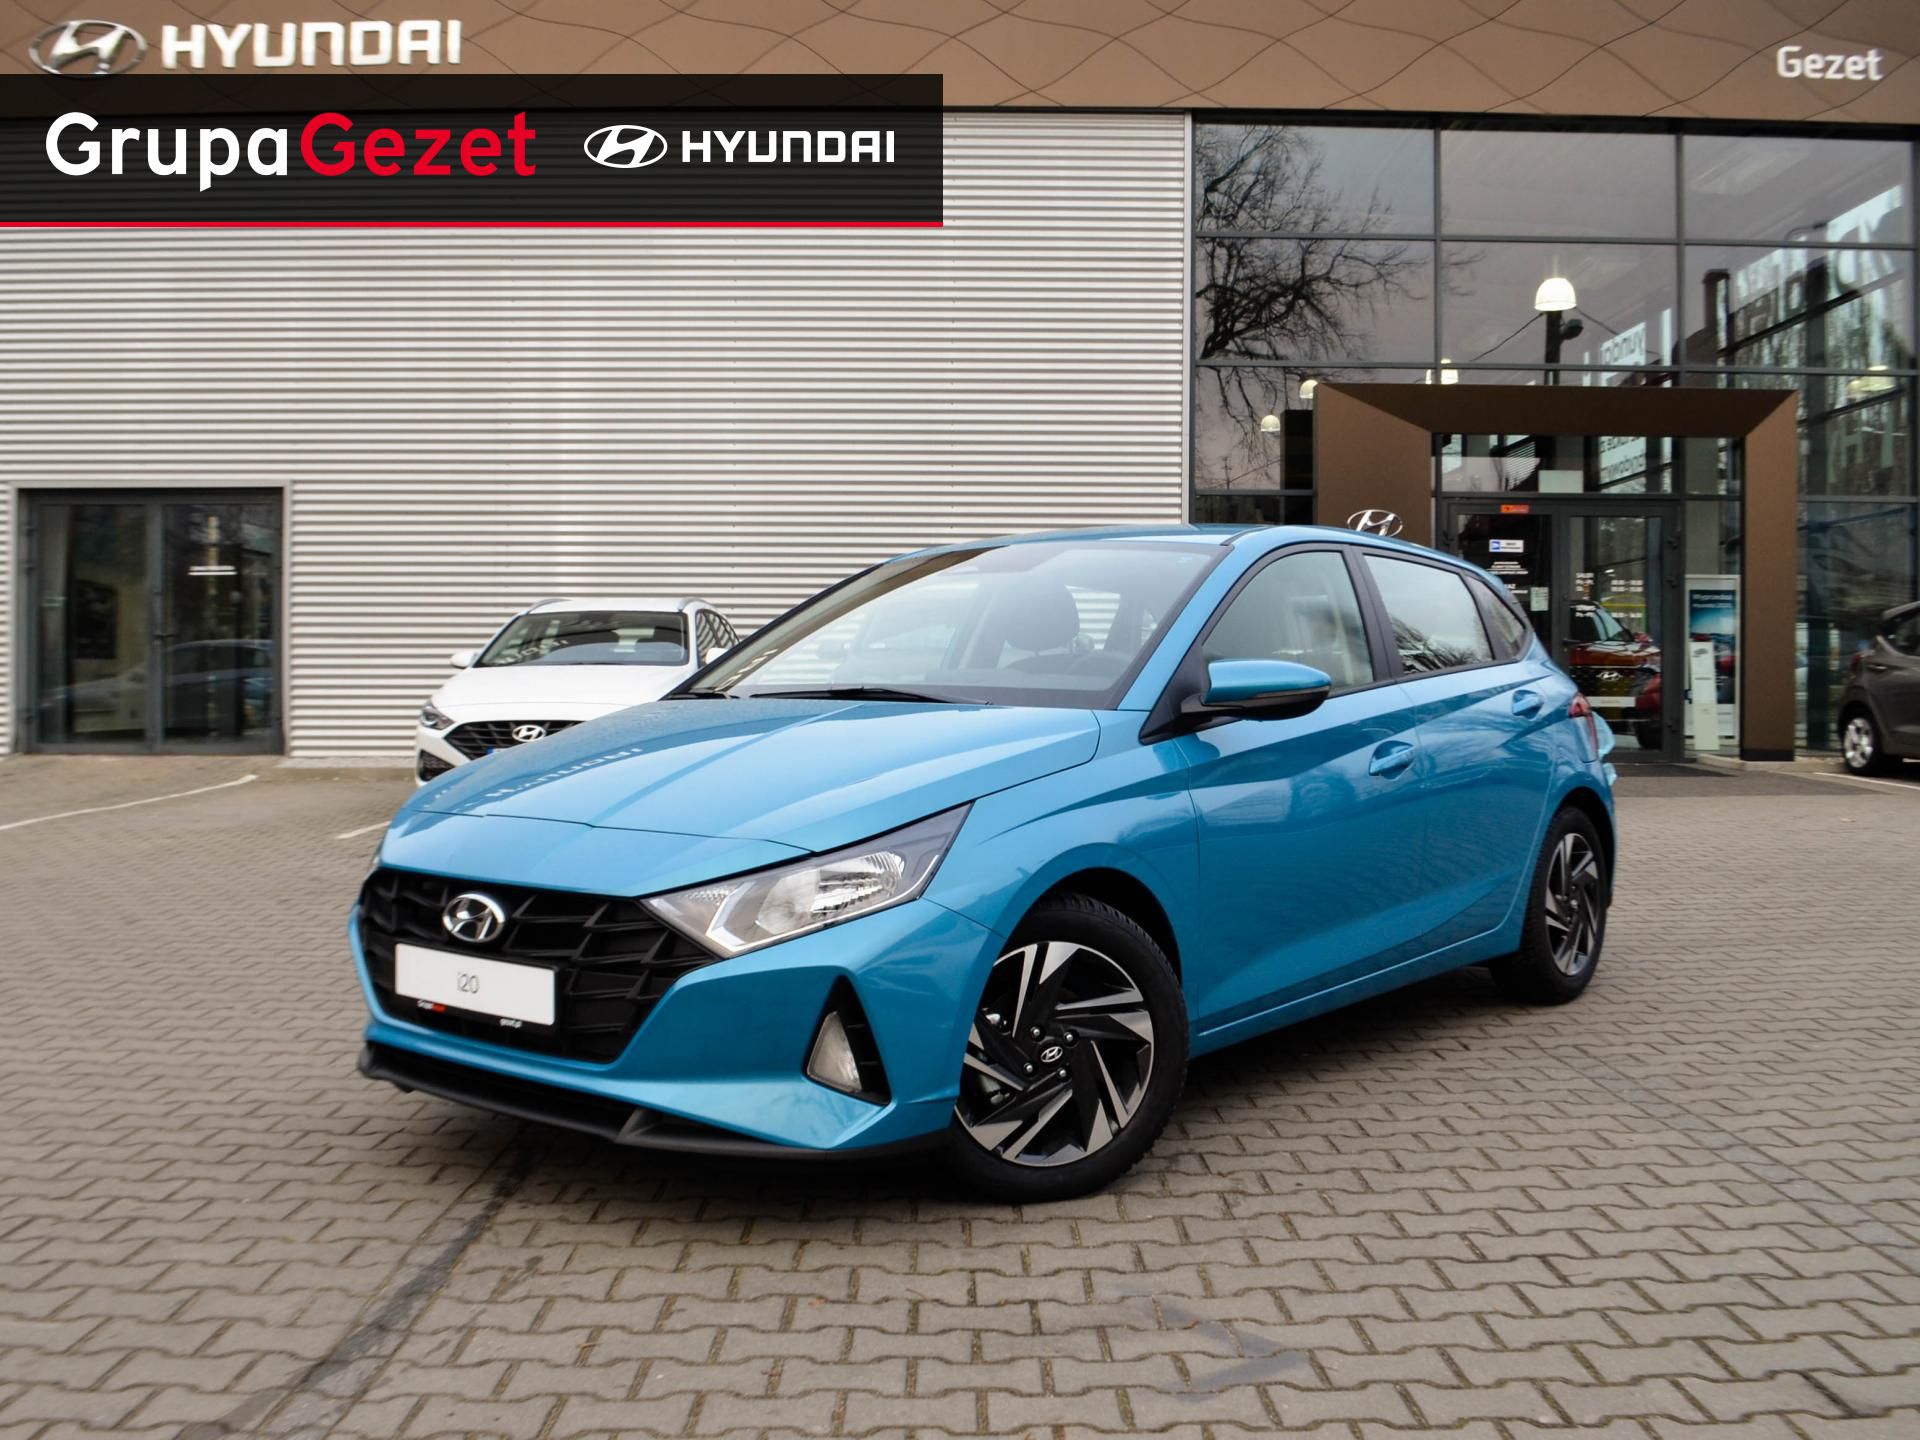 Hyundai I20 1,2 Mpi 84Km Comfort | Kolor: Niebieski ✰ Samochody - Nowe I Używane Z Gwarancją ✰ Grupa Gezet